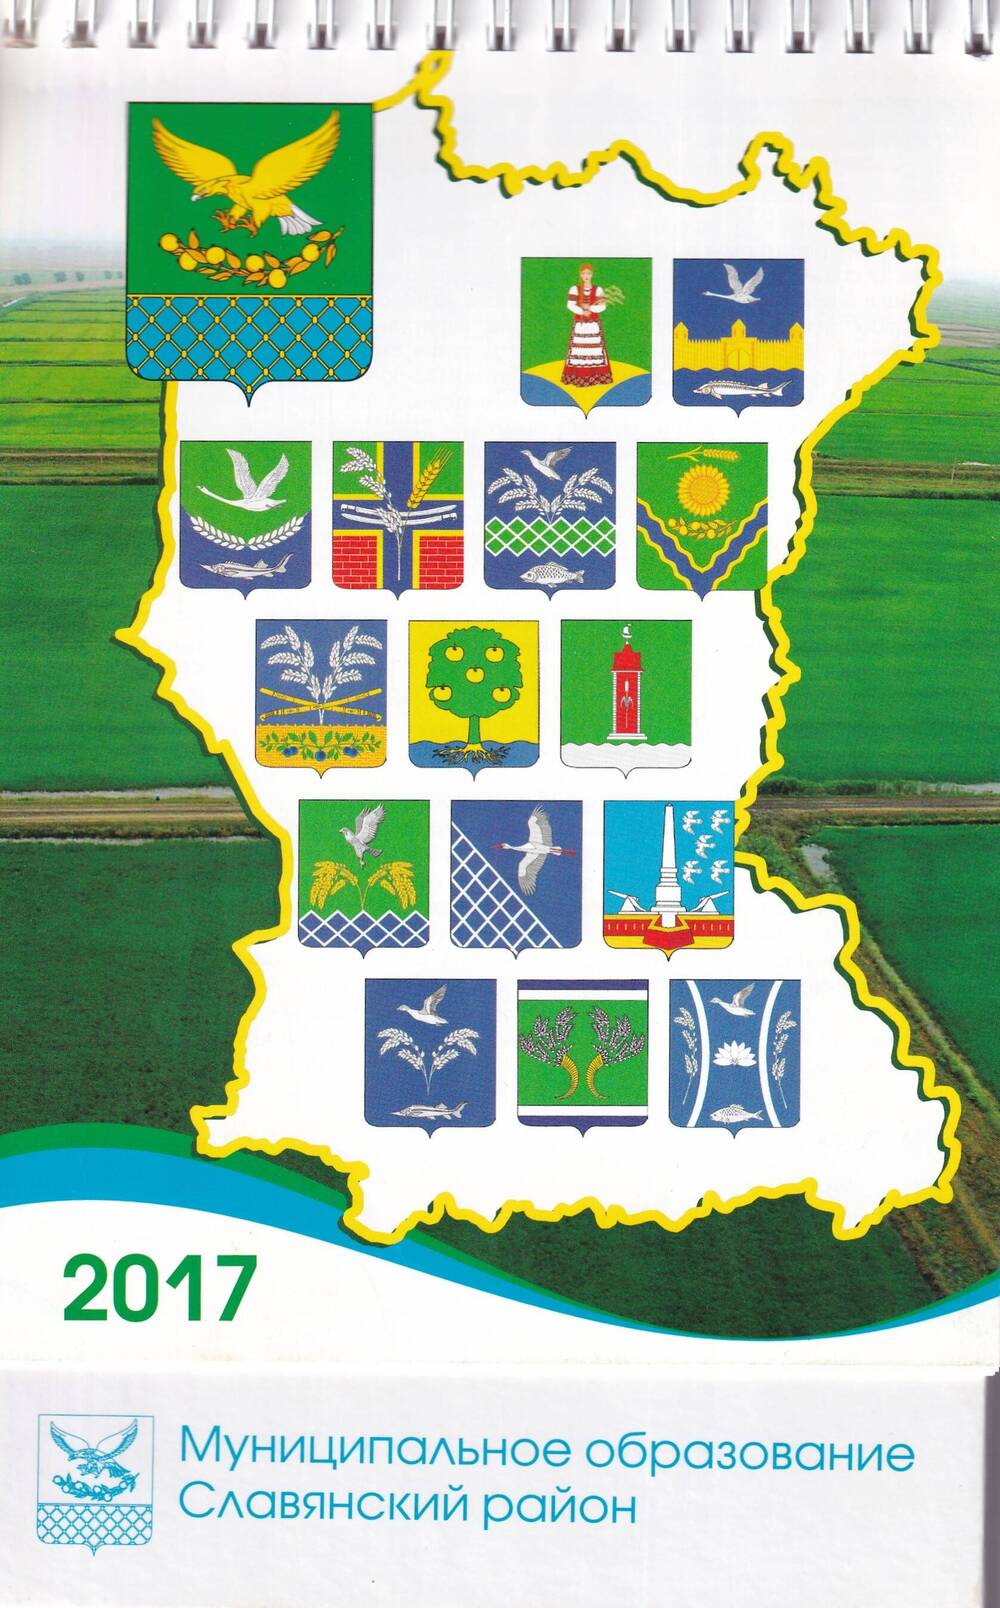 Календарь настольный перекидной Муниципальное образование Славянский район на 2017 год. 2016 год.